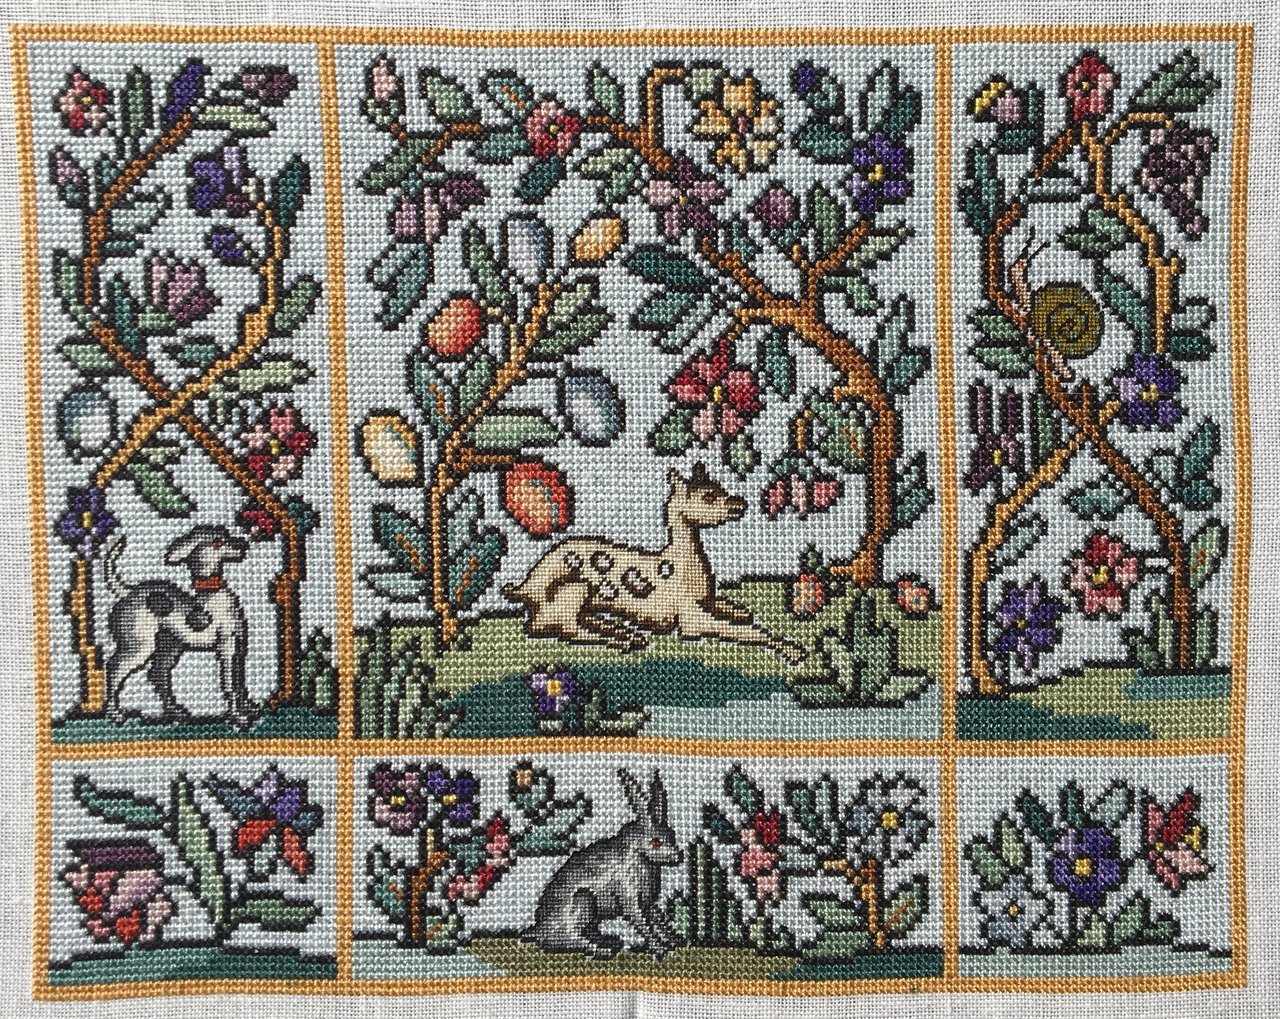 Reflets de soie - Jardin d'Eden / Сад Эдем, схема для вышивания крестом